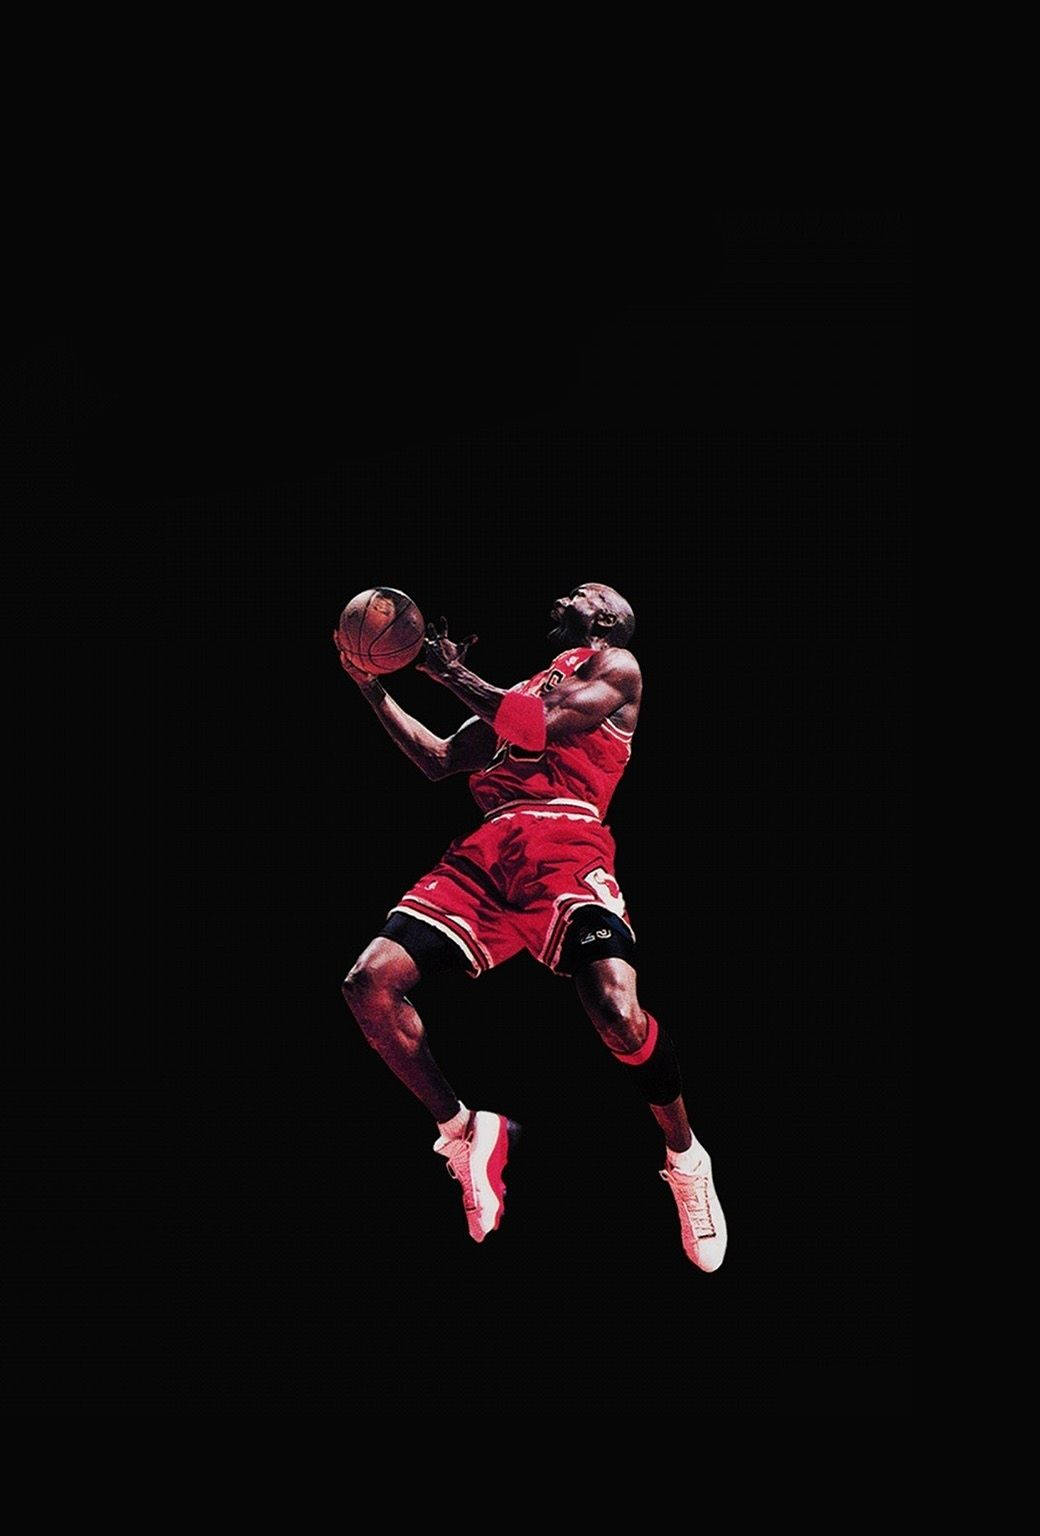 Cool Nike Michael Jordan Poster Wallpaper